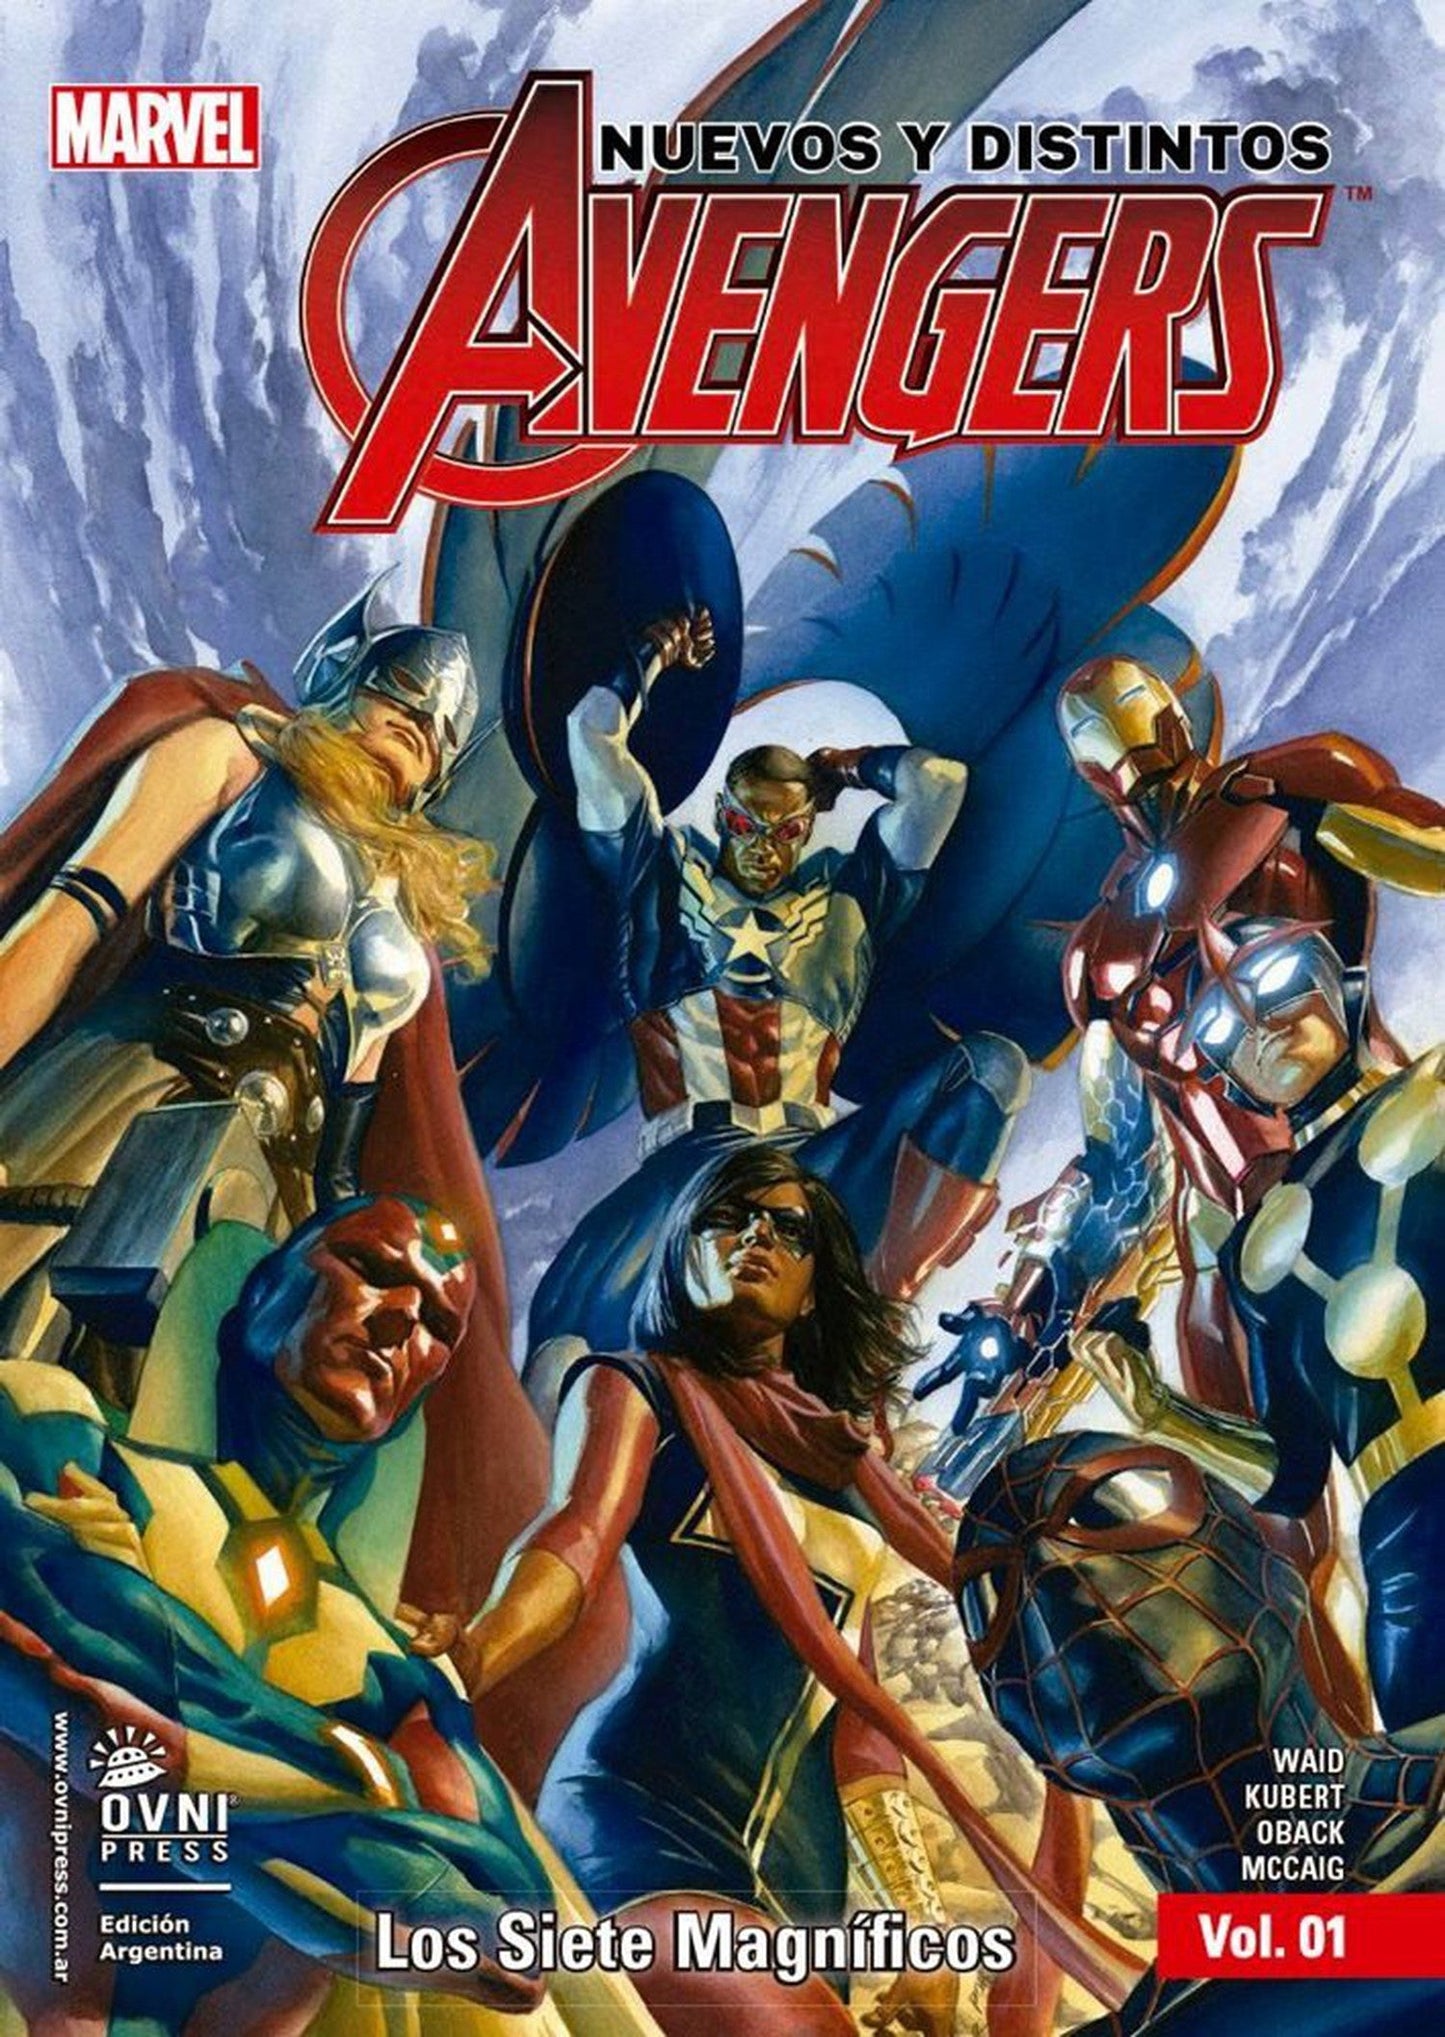 Nuevos y Distintos Avengers Vol. 1: Los Siete Magníficos OVNI Press ENcuadrocomics